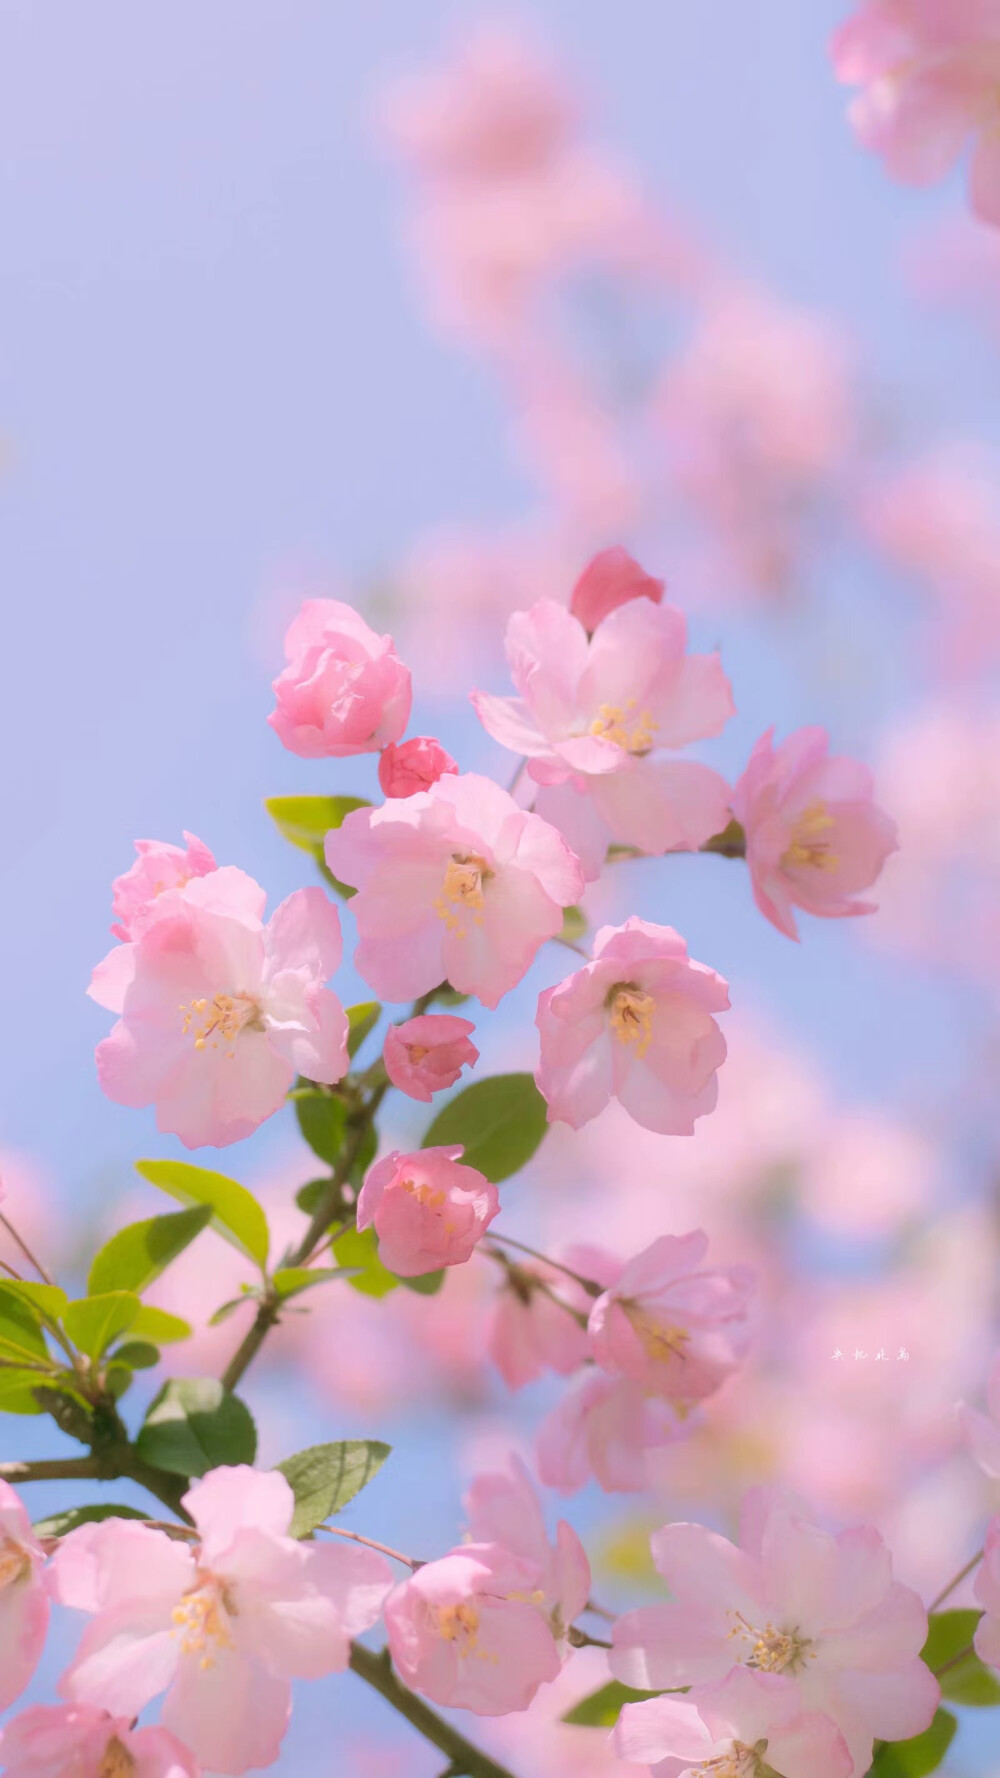 『春天的花』
via：失忆北岛
#冷瞳